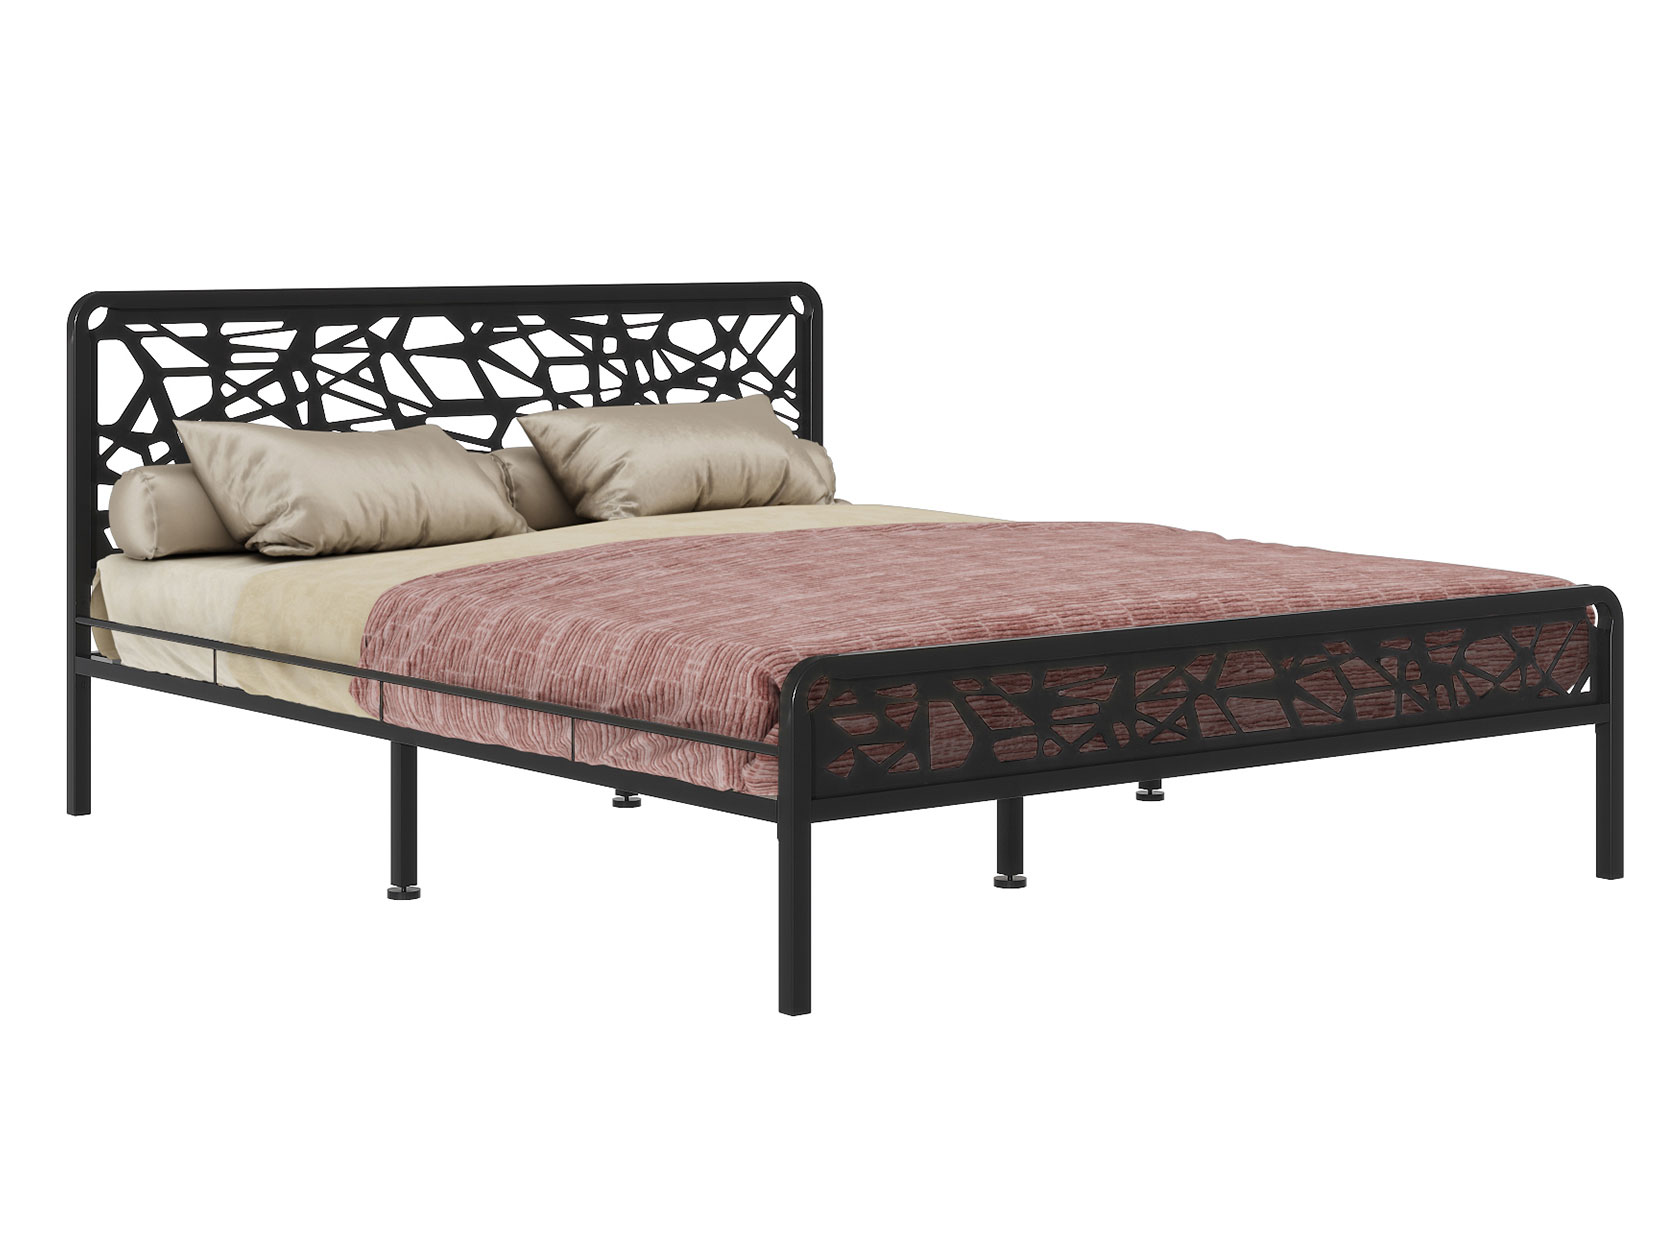 Односпальная кровать Форвард-мебель Кровать Орион